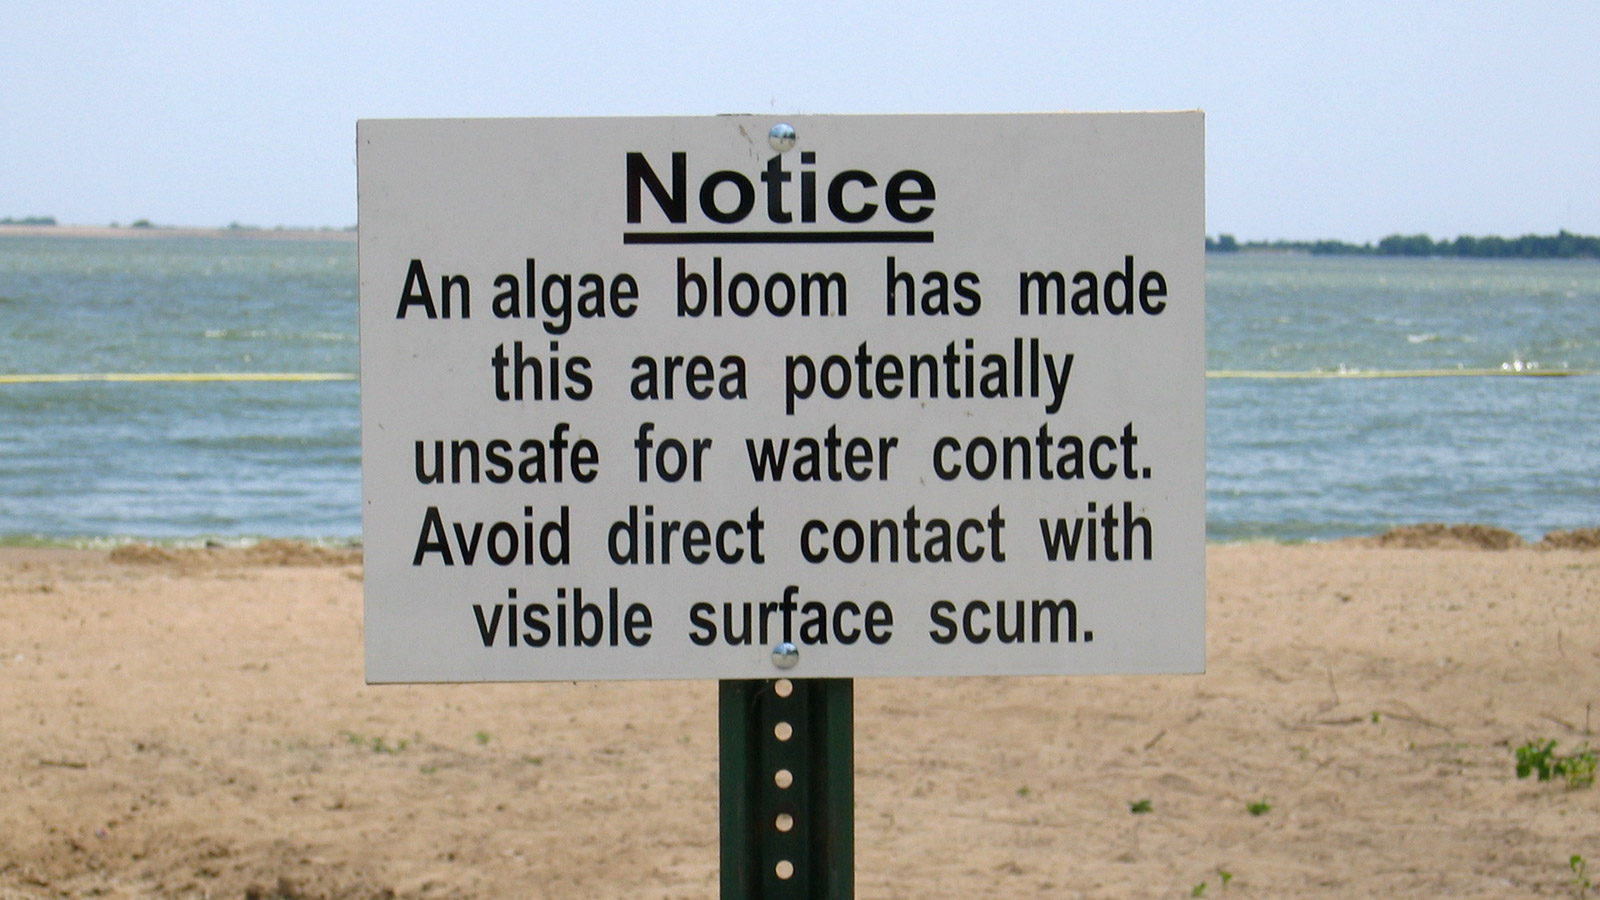 Warning sign in a beach on Lake Marion, Kansas.